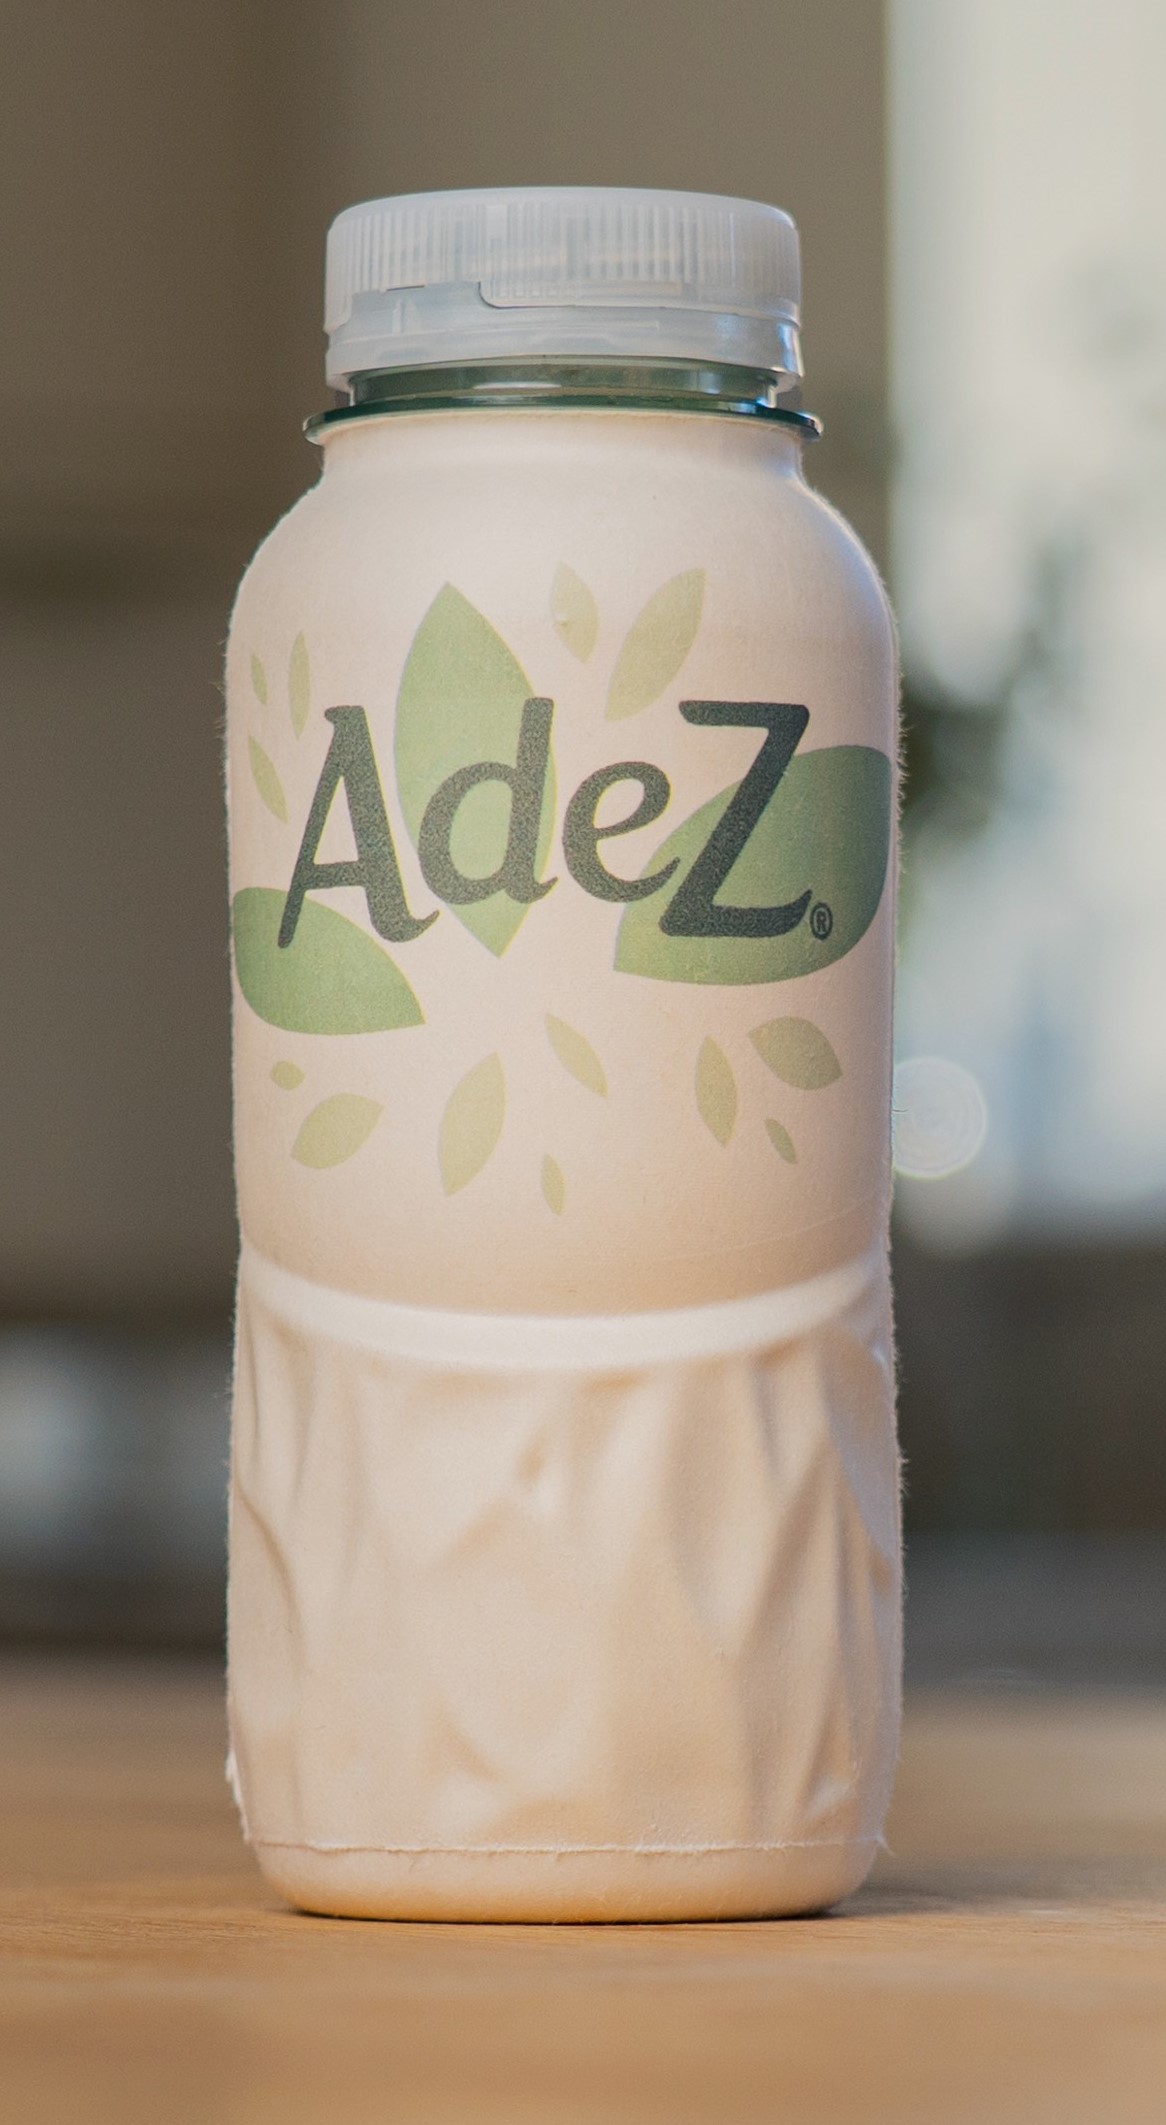 In Ungarn testet Coca-Cola den Prototypen einer Papierflasche für die Marke Adez. Vom Feldtest erhofft sich das Unternehmen Erkenntnisse über Akzeptanz und Praktikabilität der neuen Verpackung. Foto: Coca-Cola